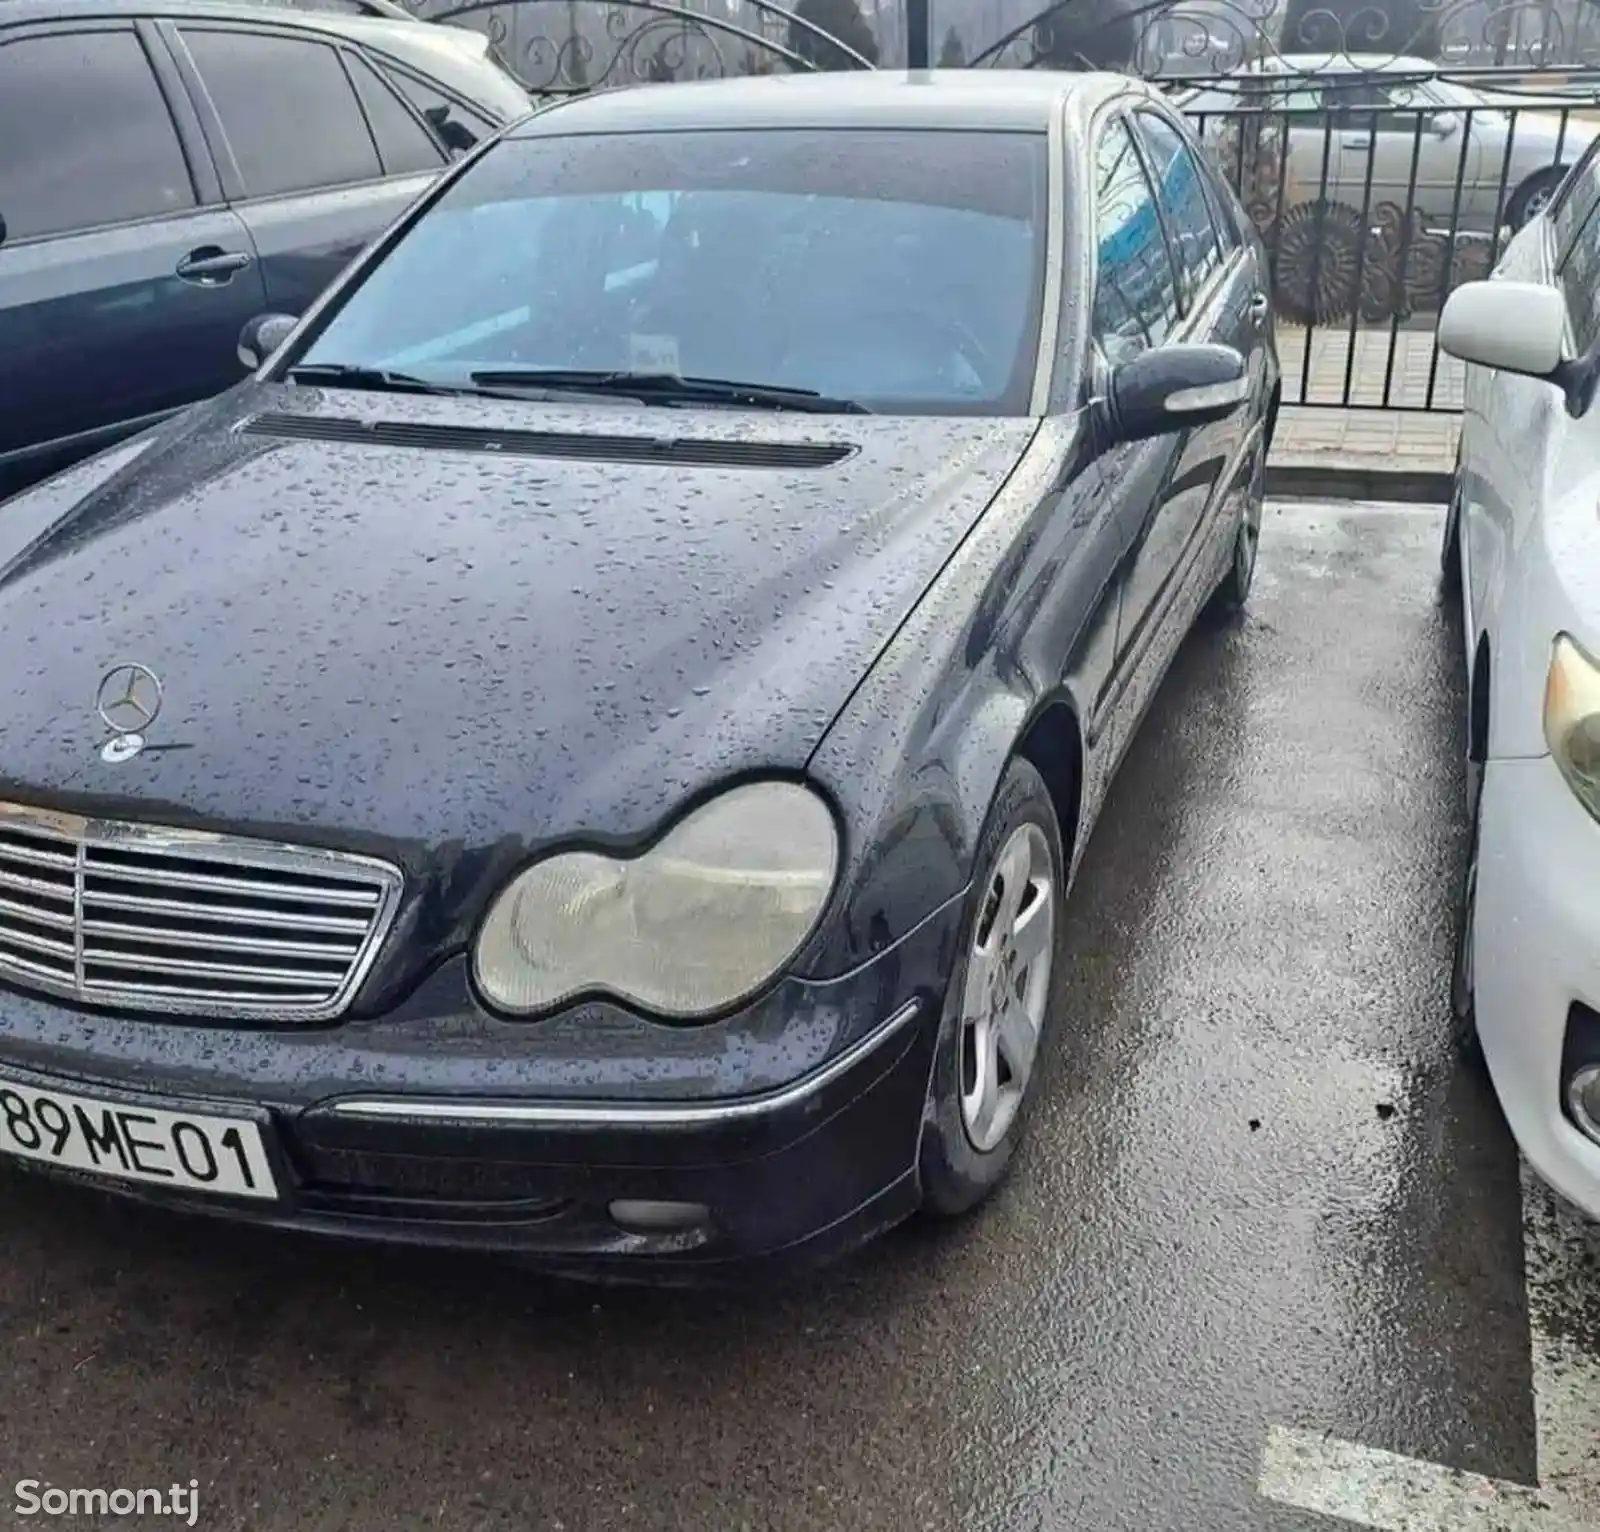 Mercedes-Benz C class, 2002-2